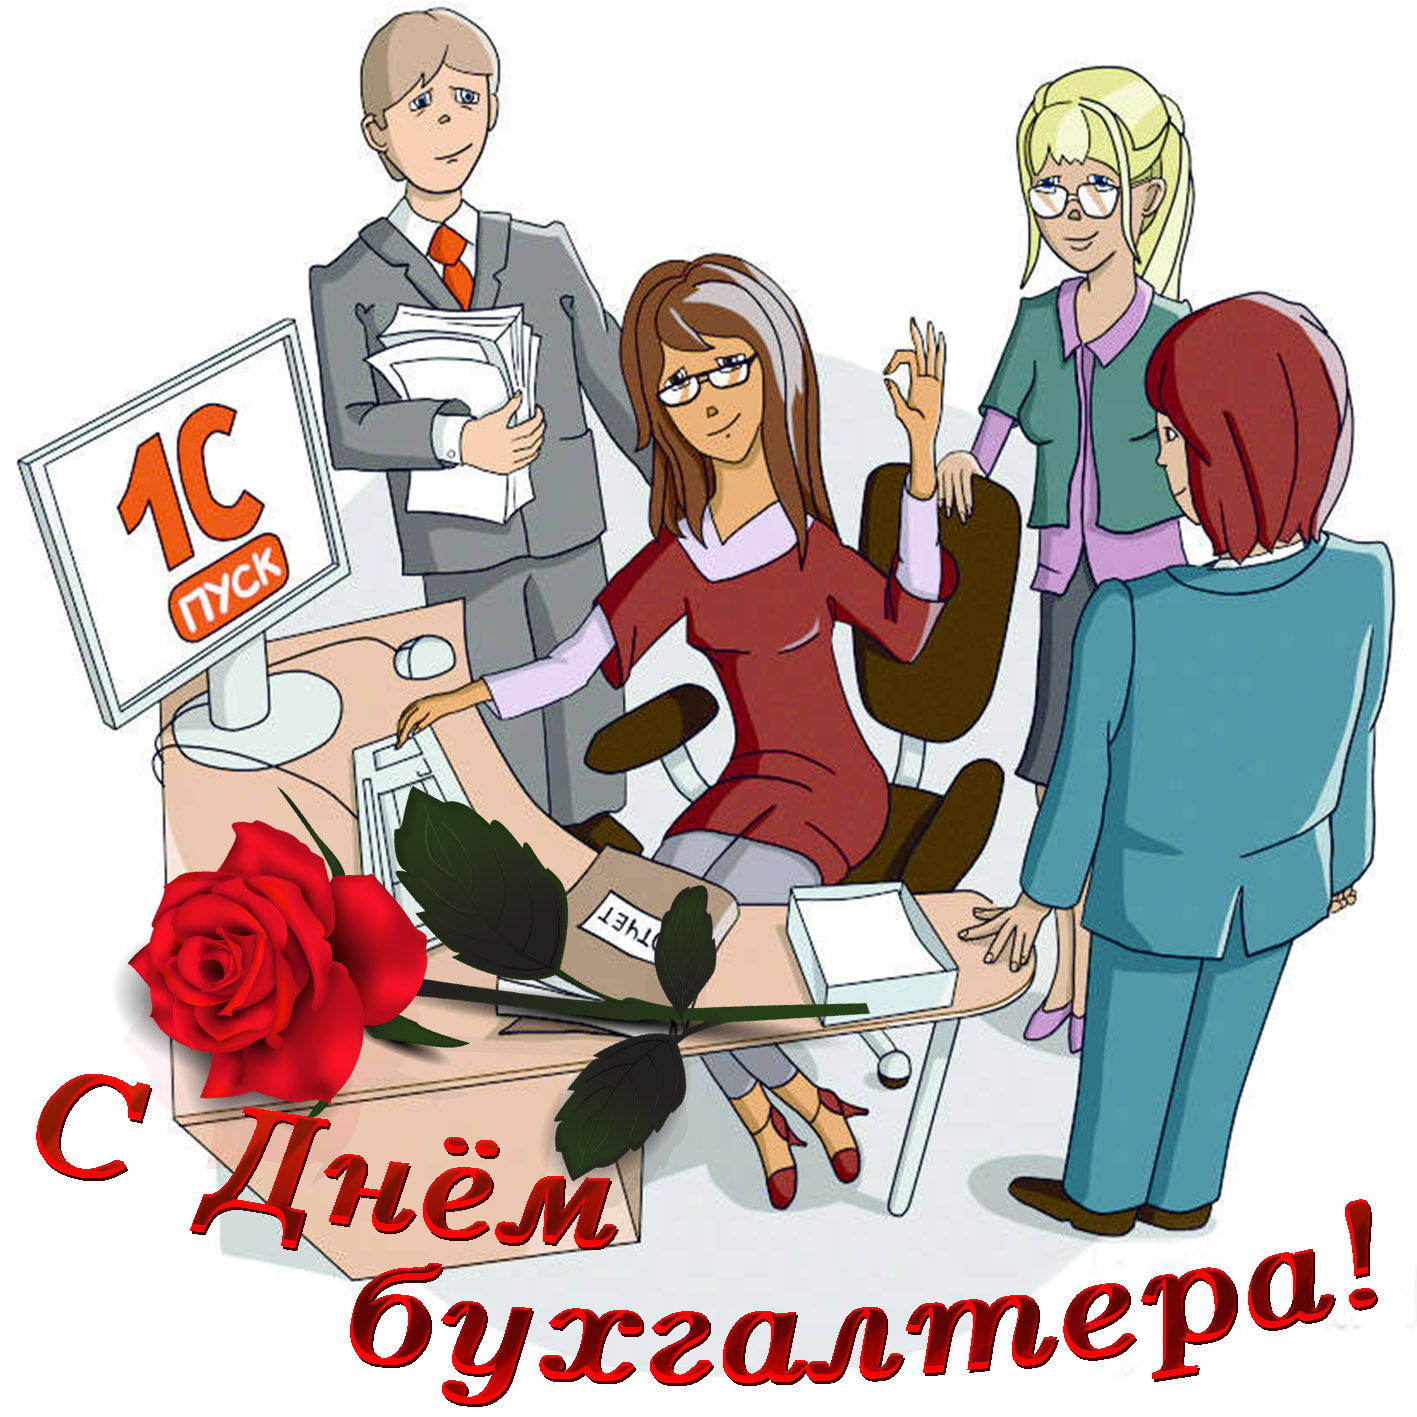 День Бухгалтера В России 21 Ноября Поздравления